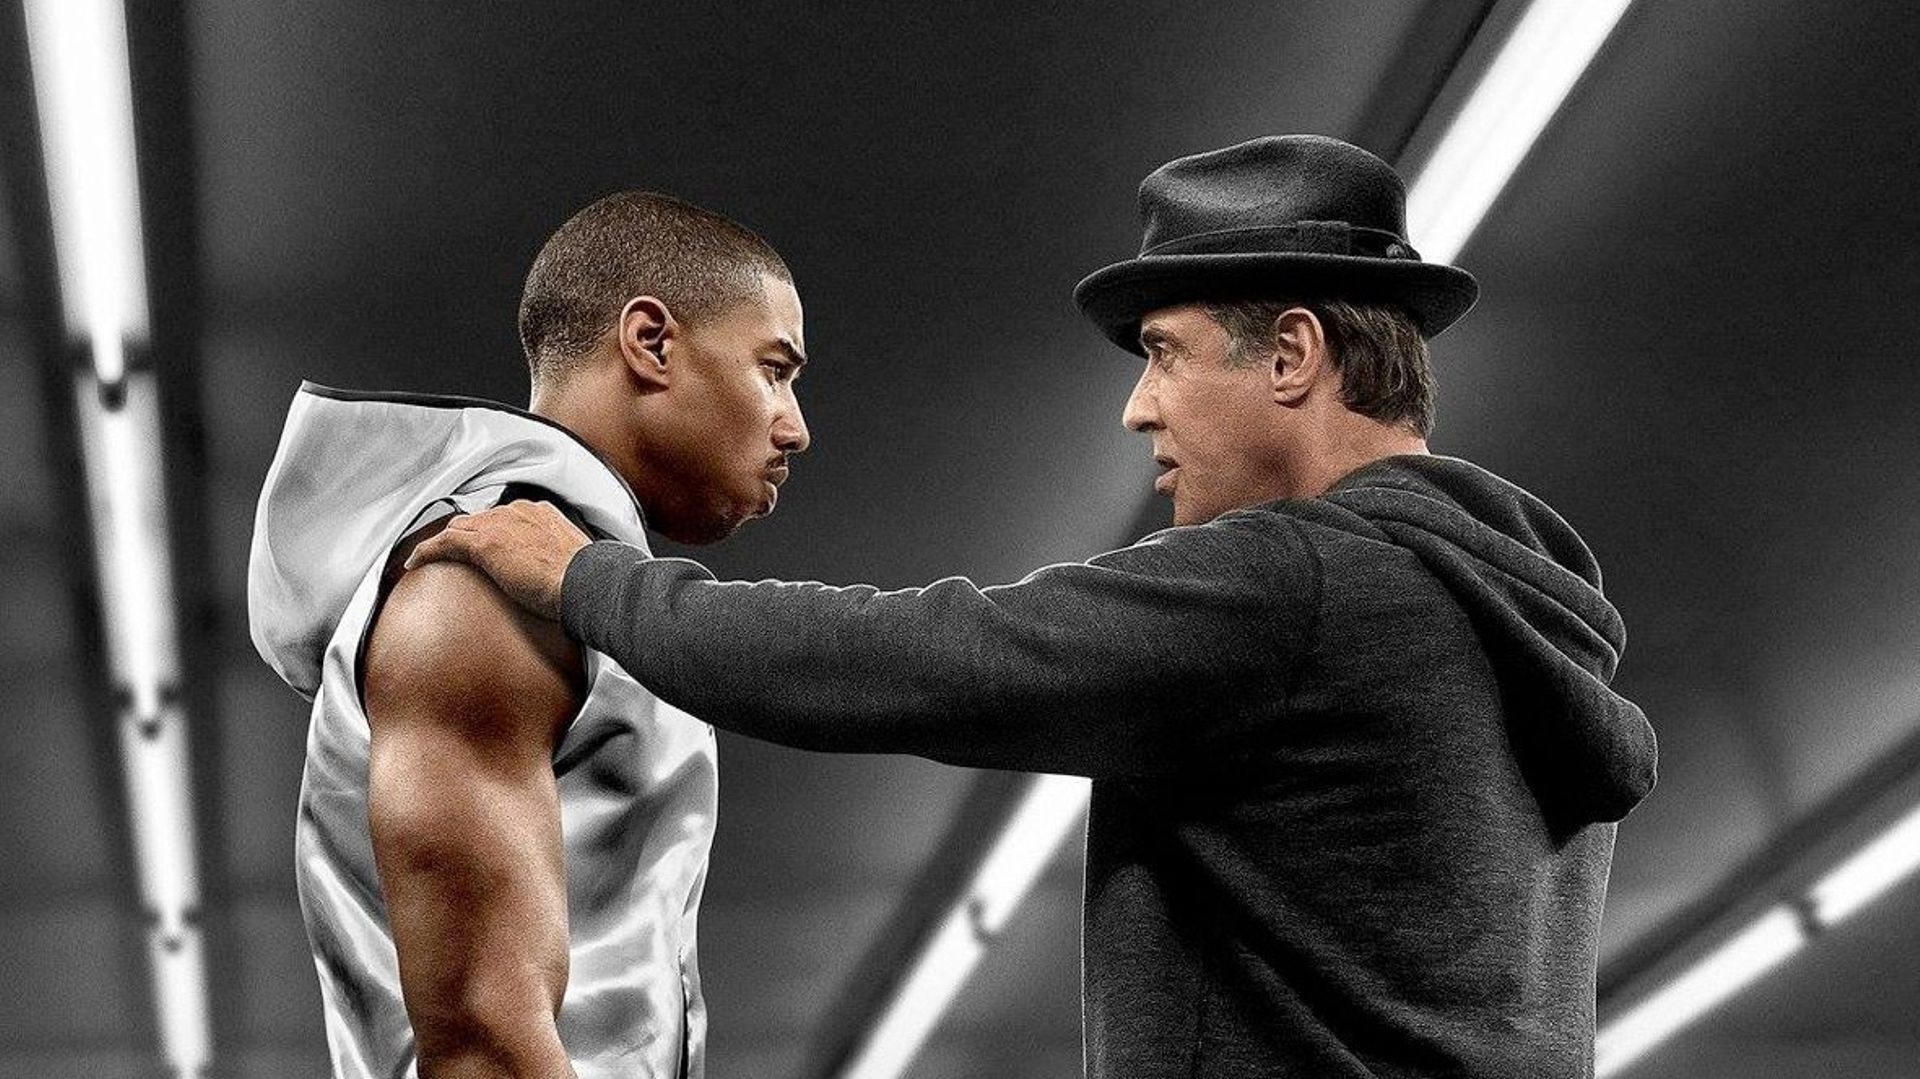 Le tournage de "Creed II" a commencé avec Michael B. Jordan et Sylvester Stallone